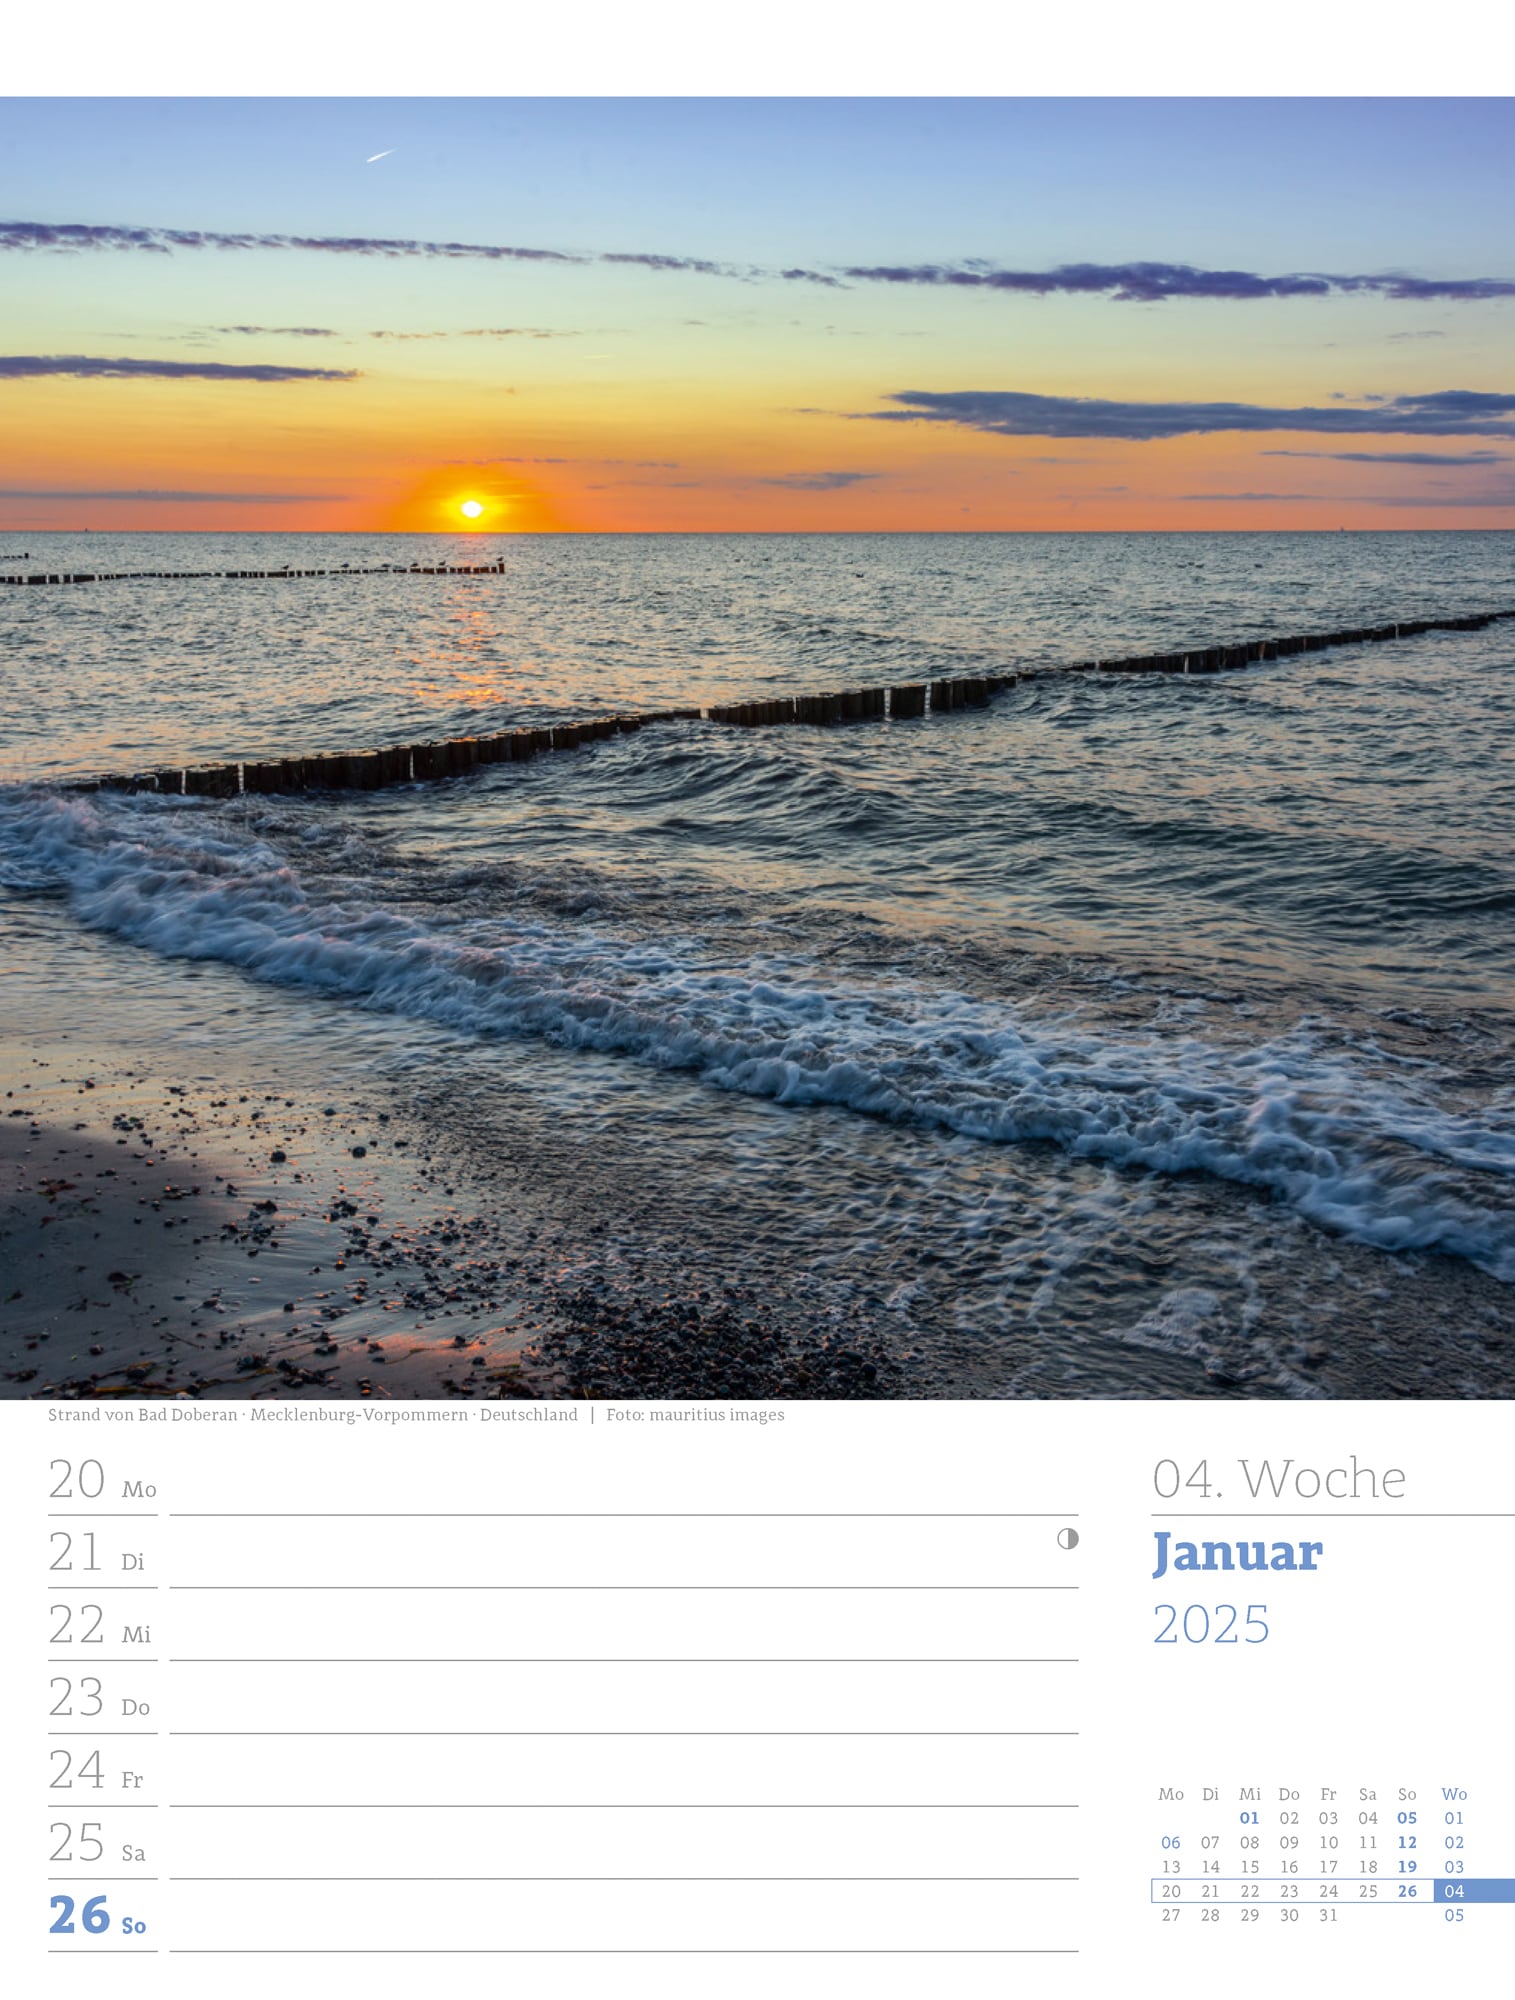 Ackermann Calendar At the Seaside 2025 - Weekly Planner - Inside View 07